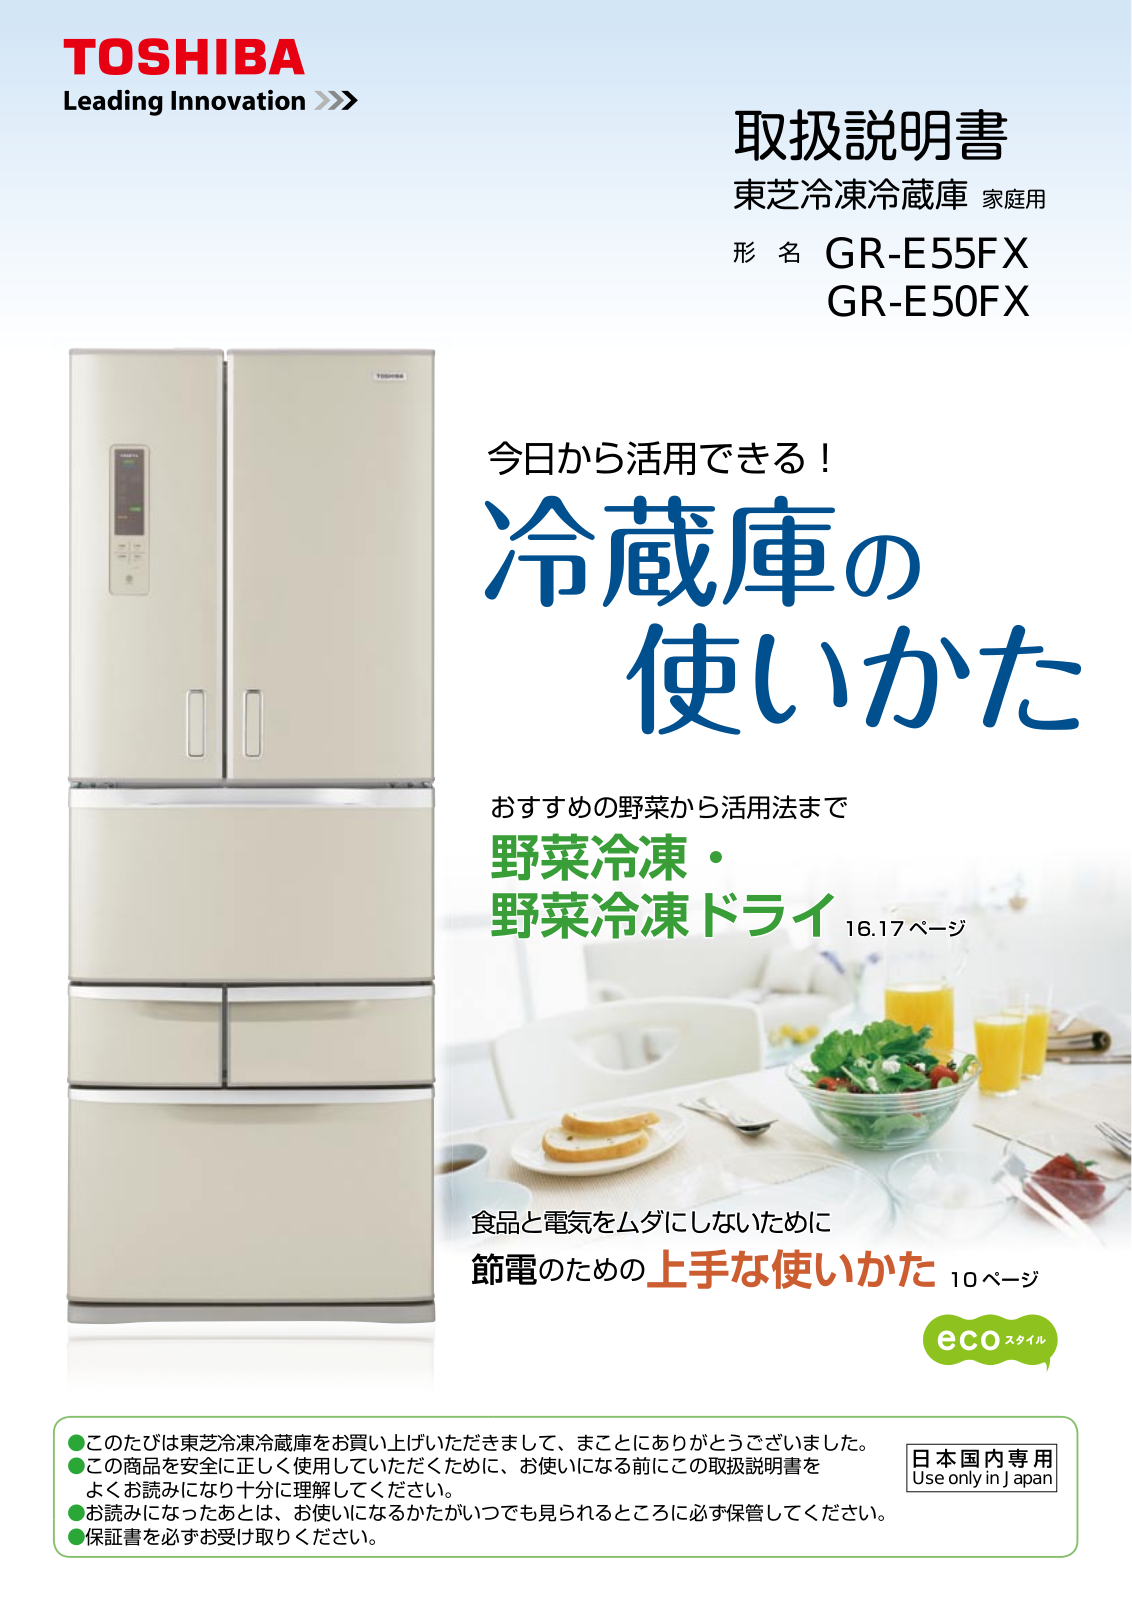 TOSHIBA GR-E50FX, GR-E55FX User guide